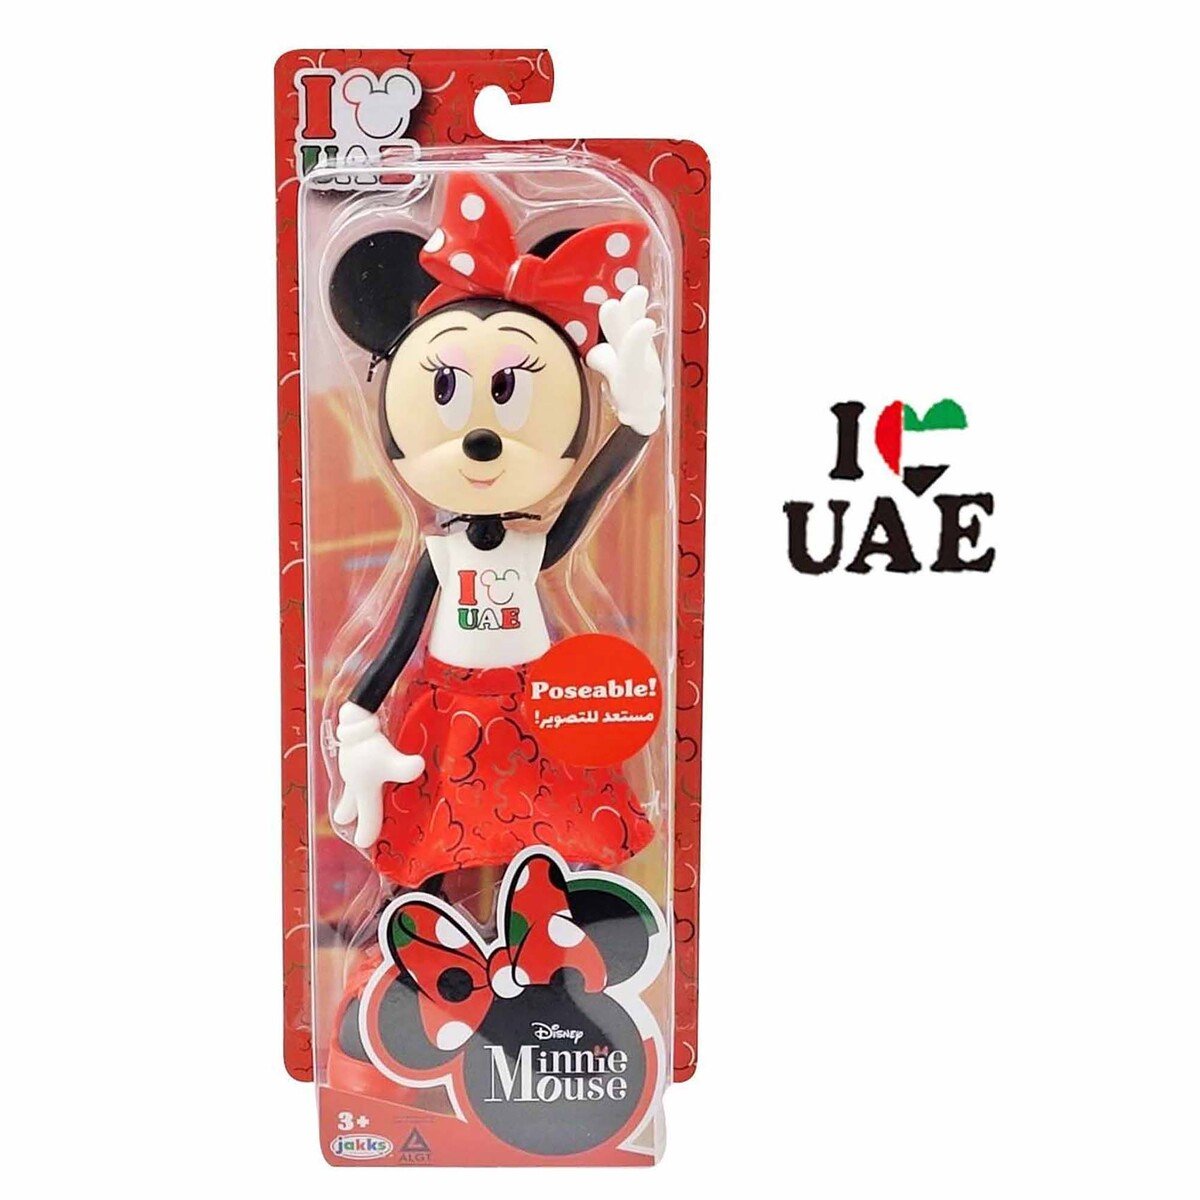 Minnie Mouse Doll I Love You UAE 10" 216614